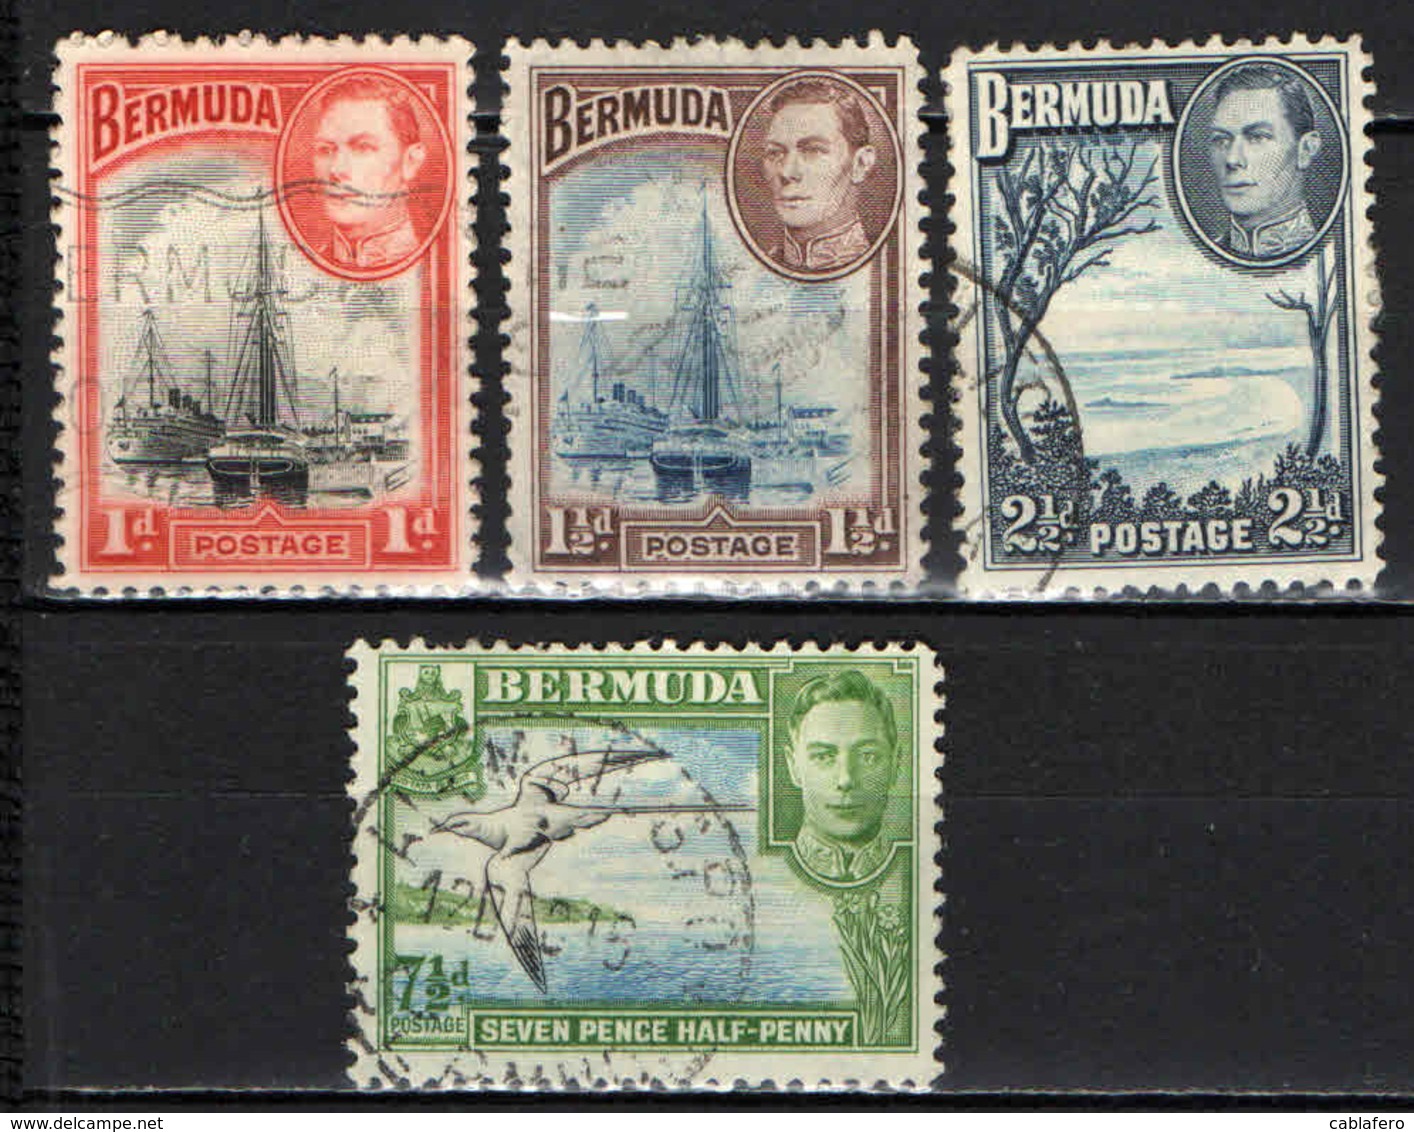 BERMUDA - 1938 - IMMAGINI DI BERMUDA ED EFFIGIE DEL RE GIORGIO VI - USATI - Bermuda